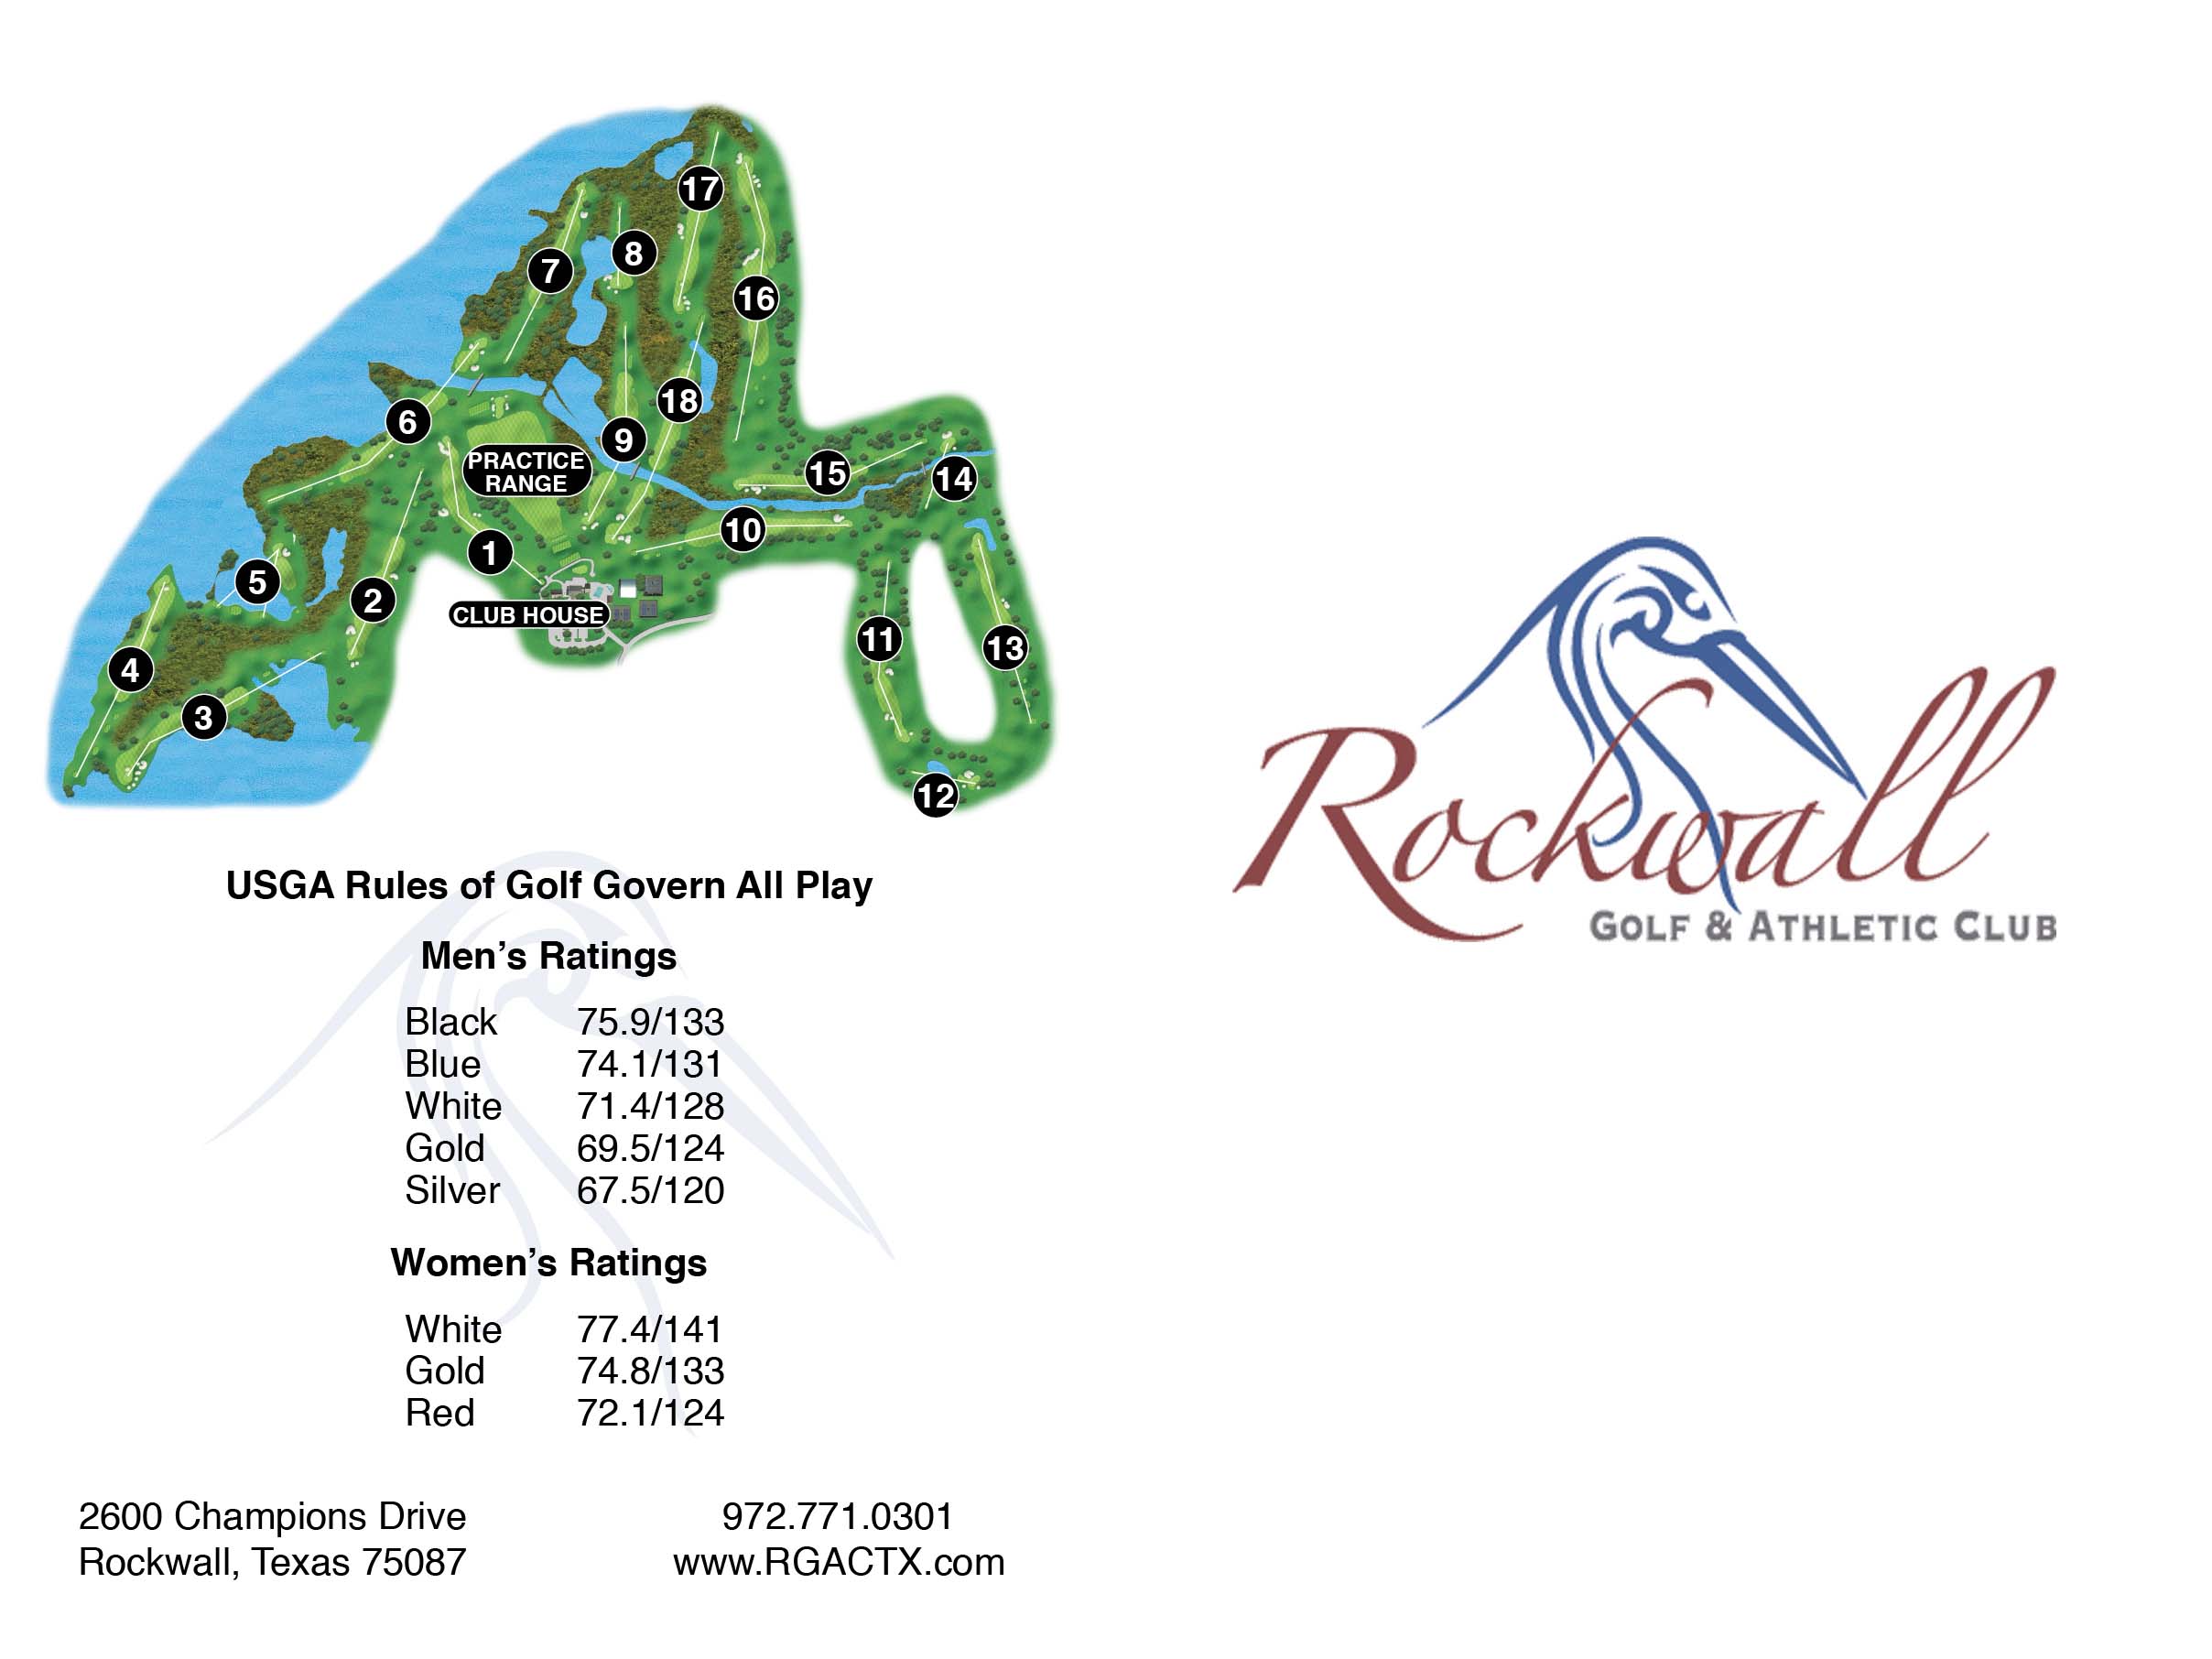 Rockwall Golf & Athletic Club